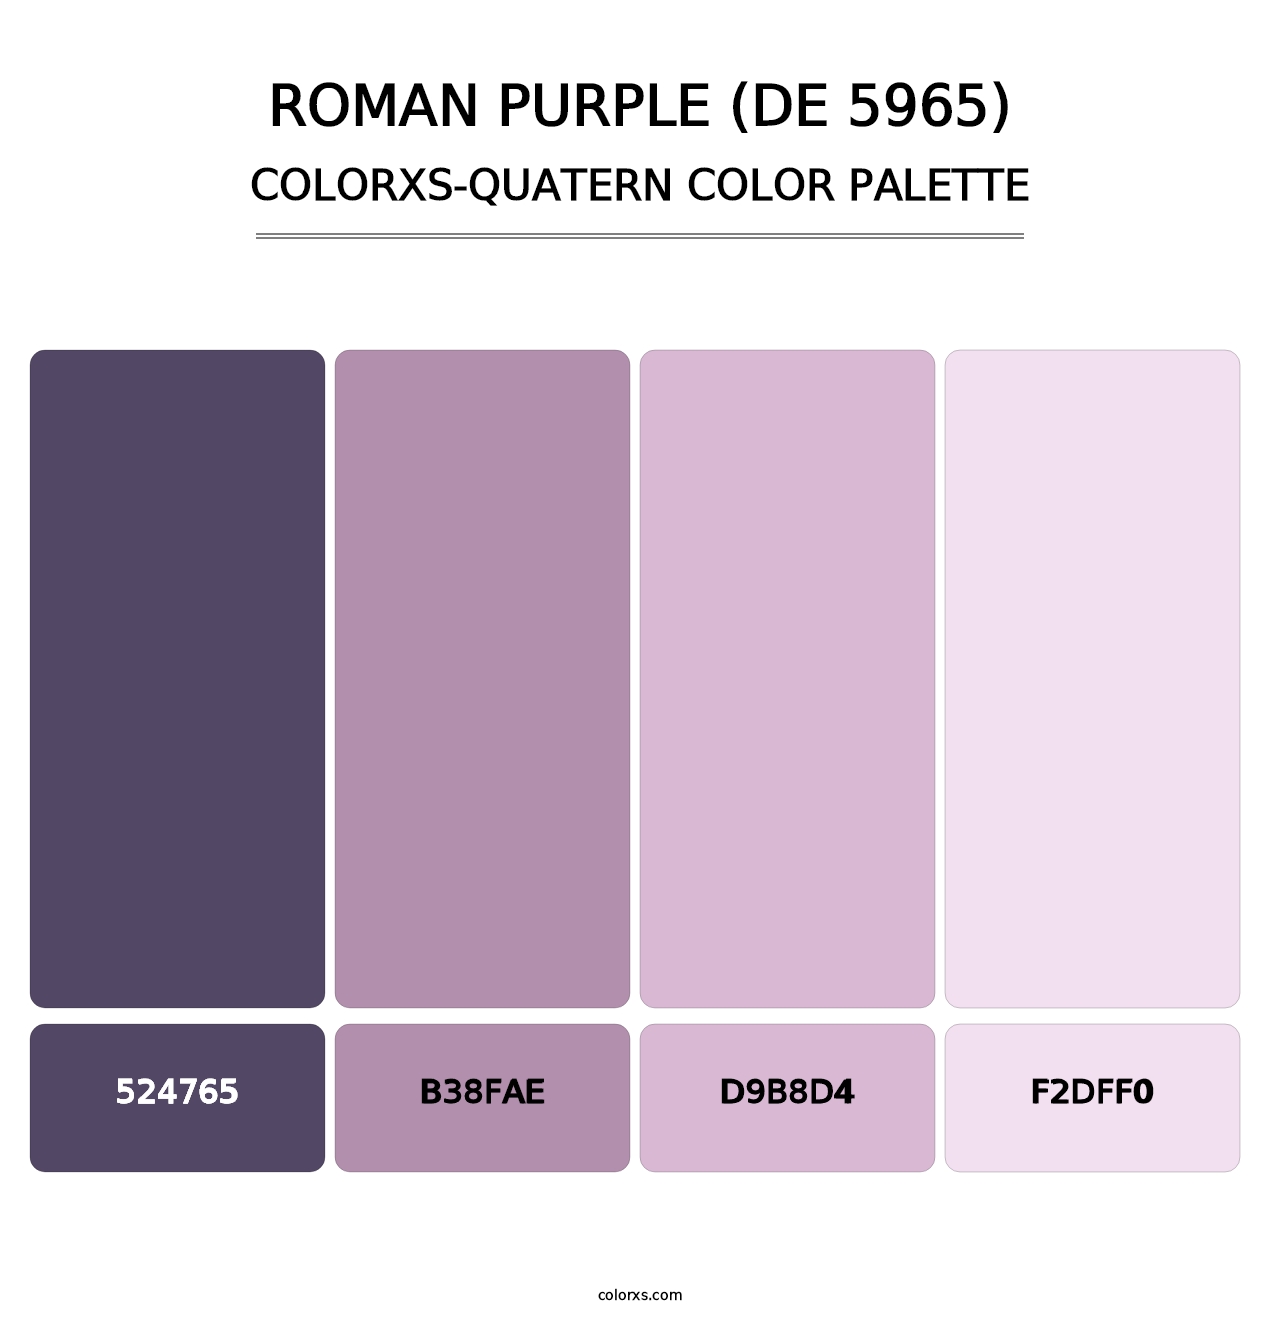 Roman Purple (DE 5965) - Colorxs Quatern Palette